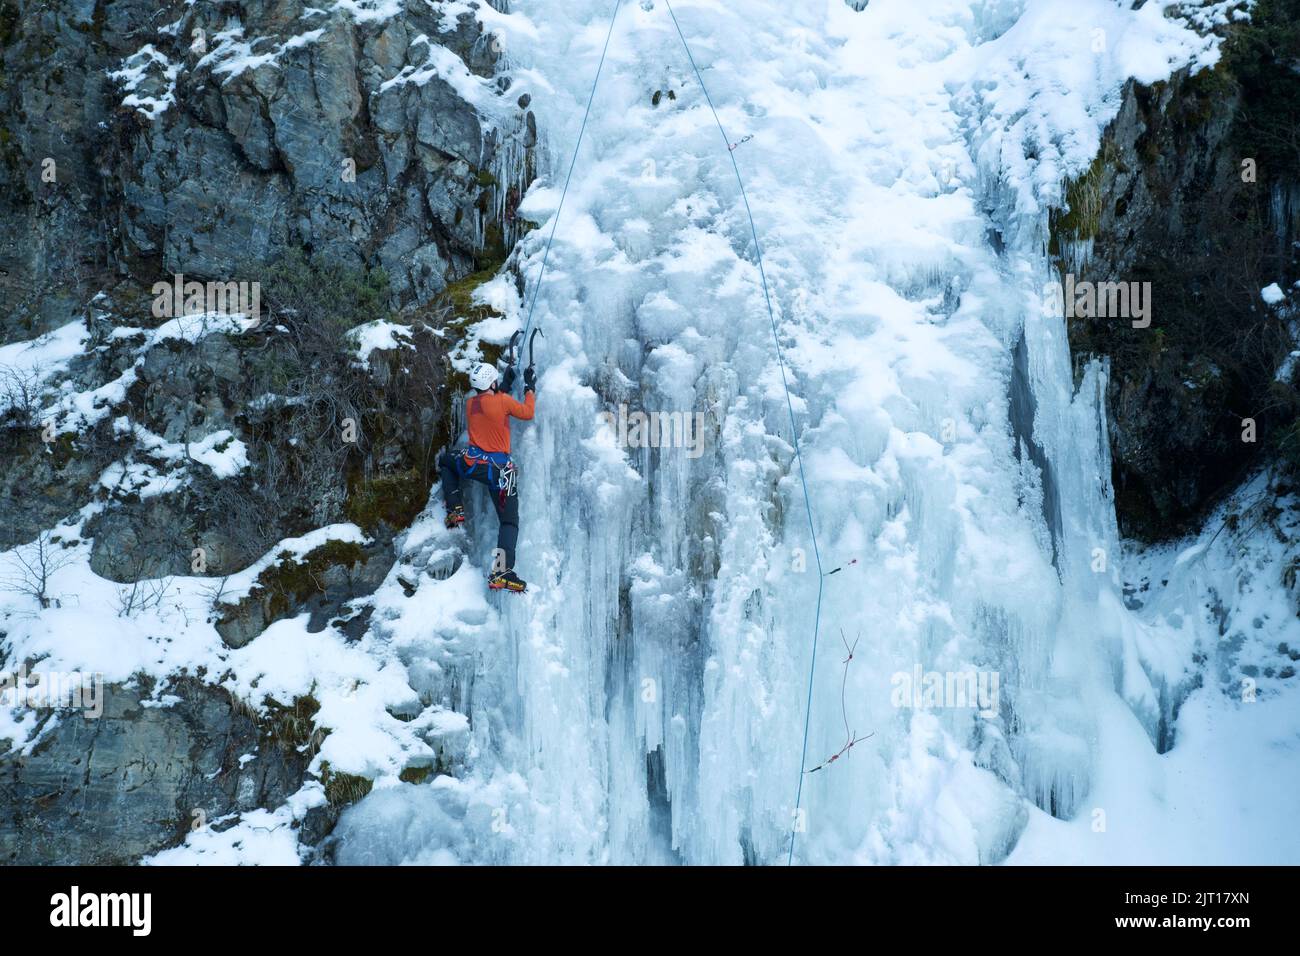 Imidentificato personale di arrampicata su ghiaccio in una pista di ghiaccio a Ushuaia, Tierra del Fuego - Argentina Foto Stock